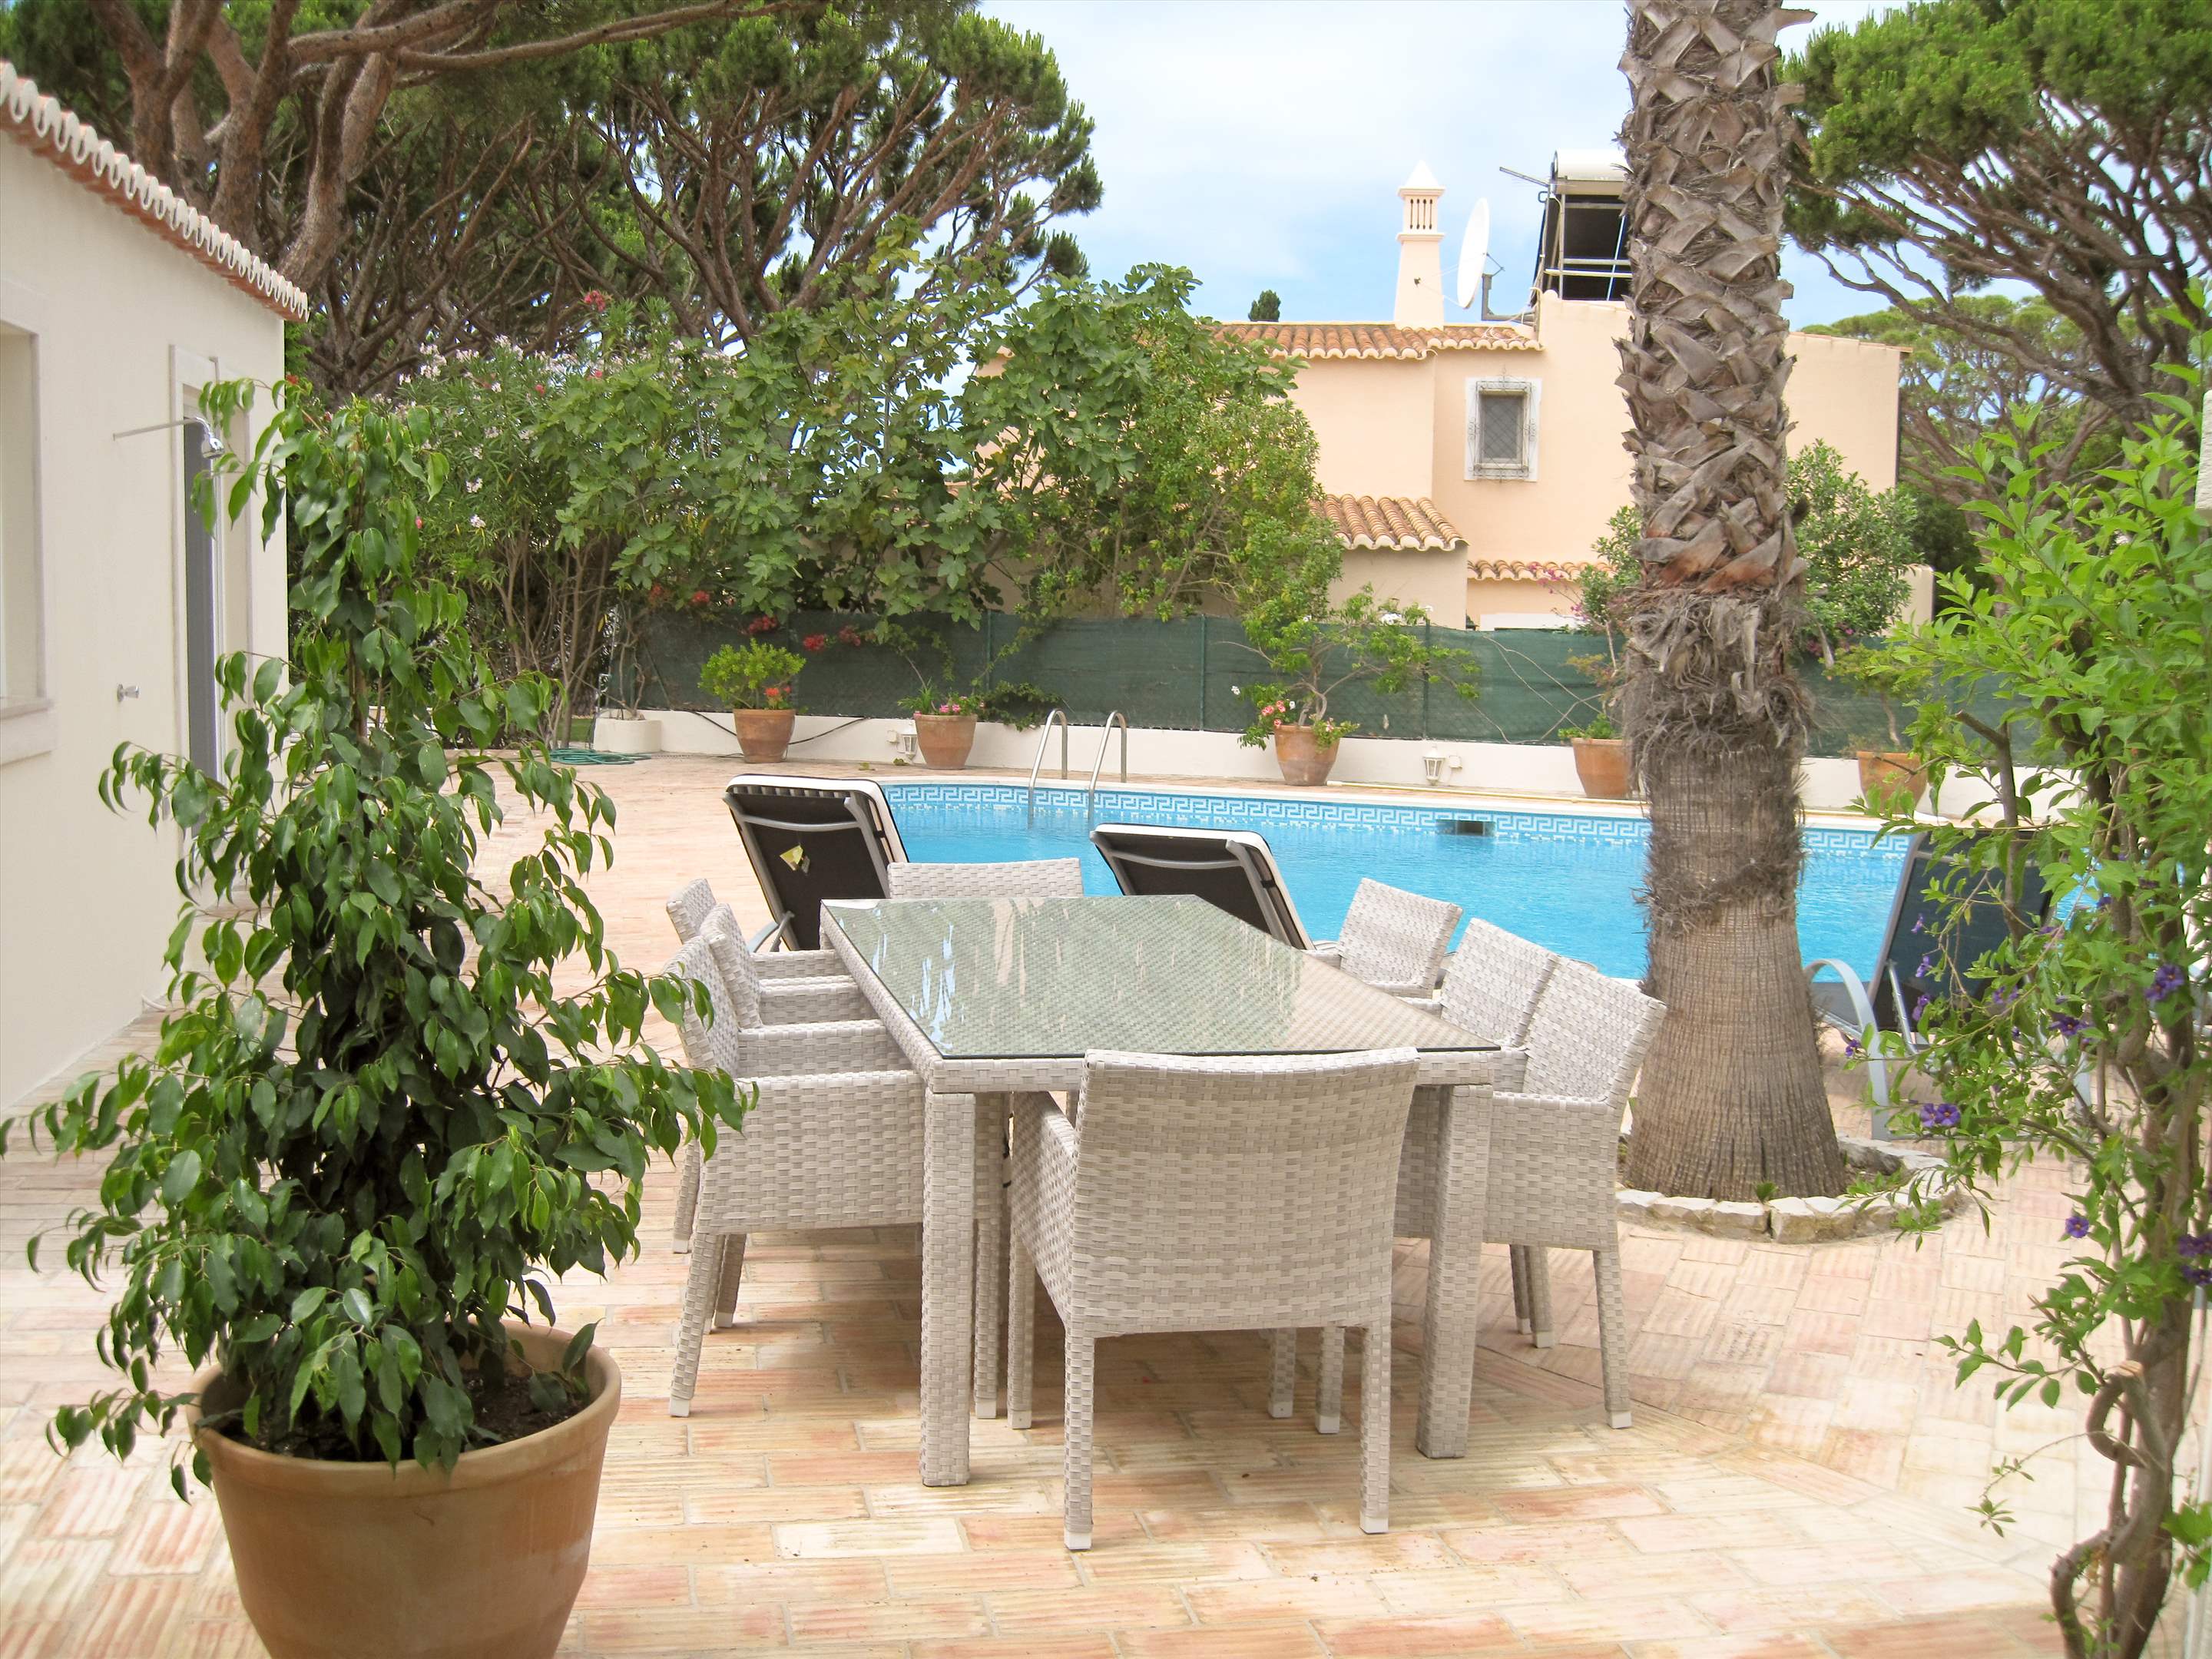 Casa Blanca, 4 Bed Rental, 4 bedroom villa in Vale do Lobo, Algarve Photo #6